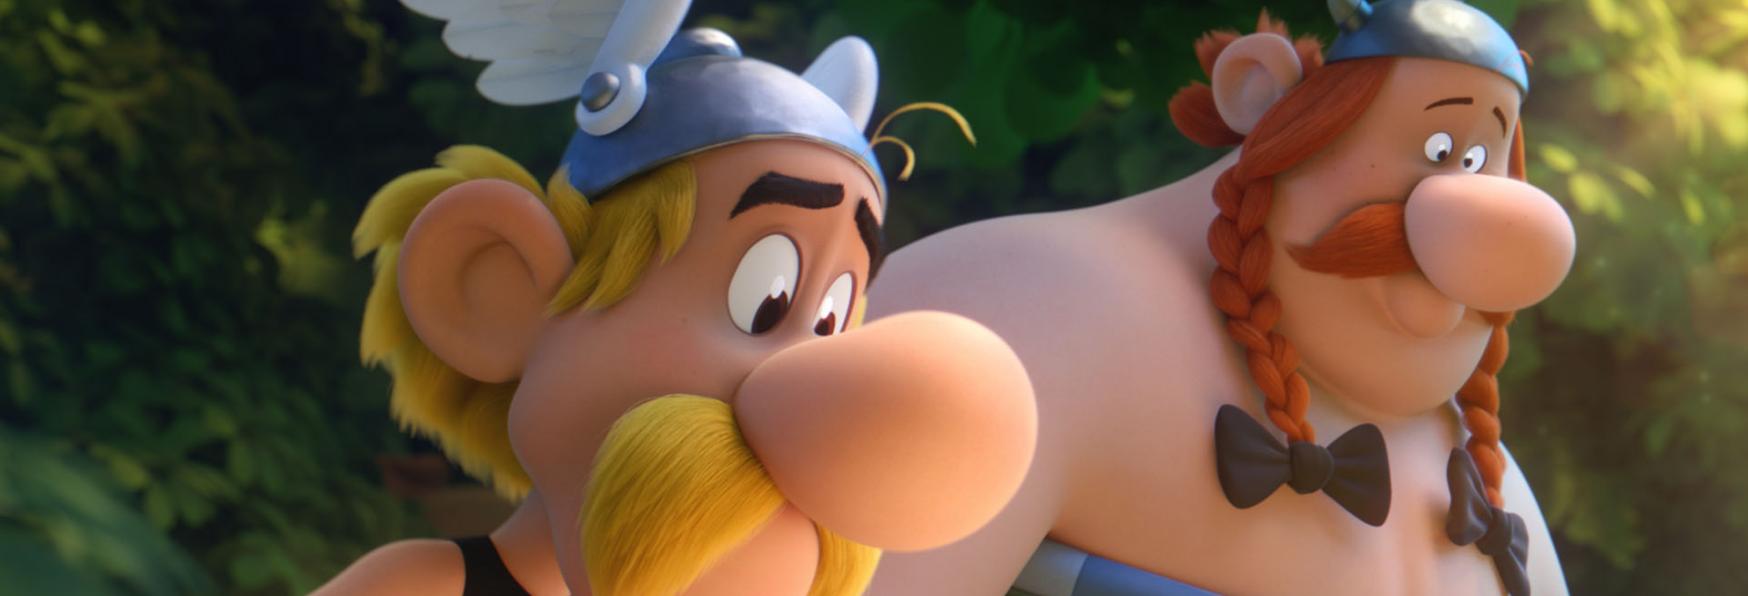 In Produzione per Netflix una nuova Serie Animata sul Personaggio di Asterix